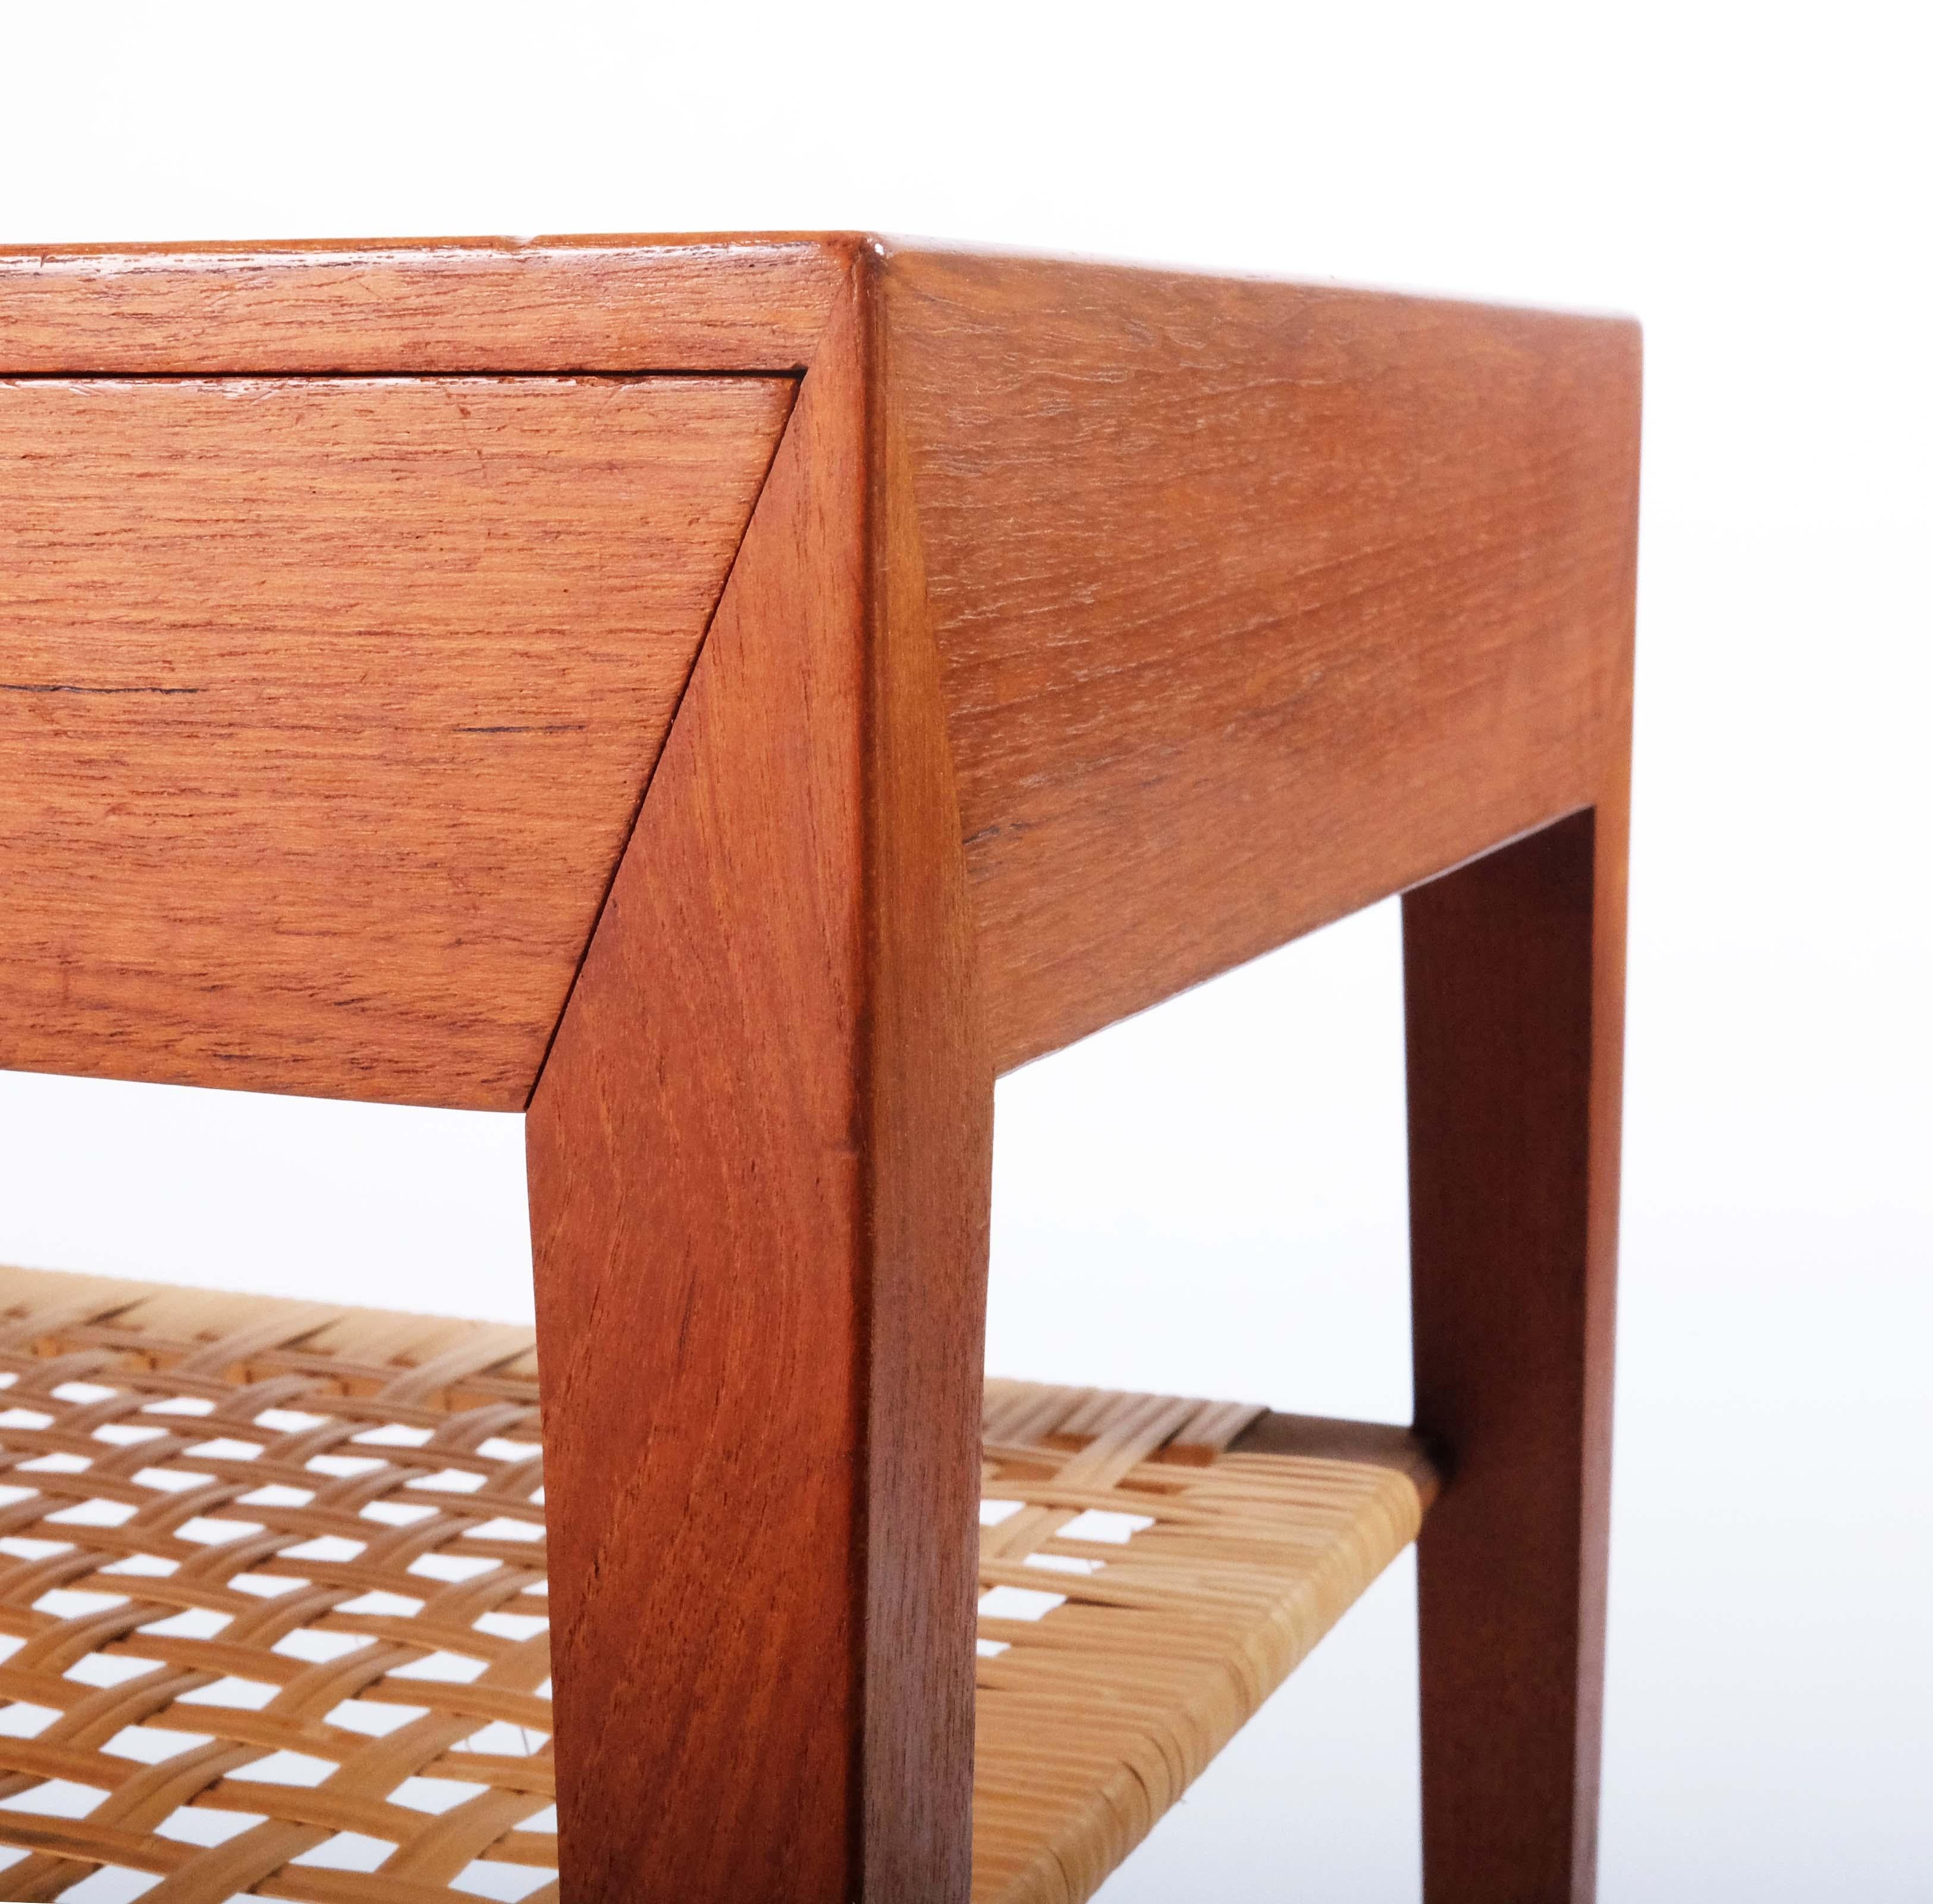 L'usine de meubles Haslev Møbelsnedkeri avait son propre style très distinct développé par son designer en chef Severin Hansen. Cette petite table d'appoint en teck et rotin est un très bon exemple de ce style.